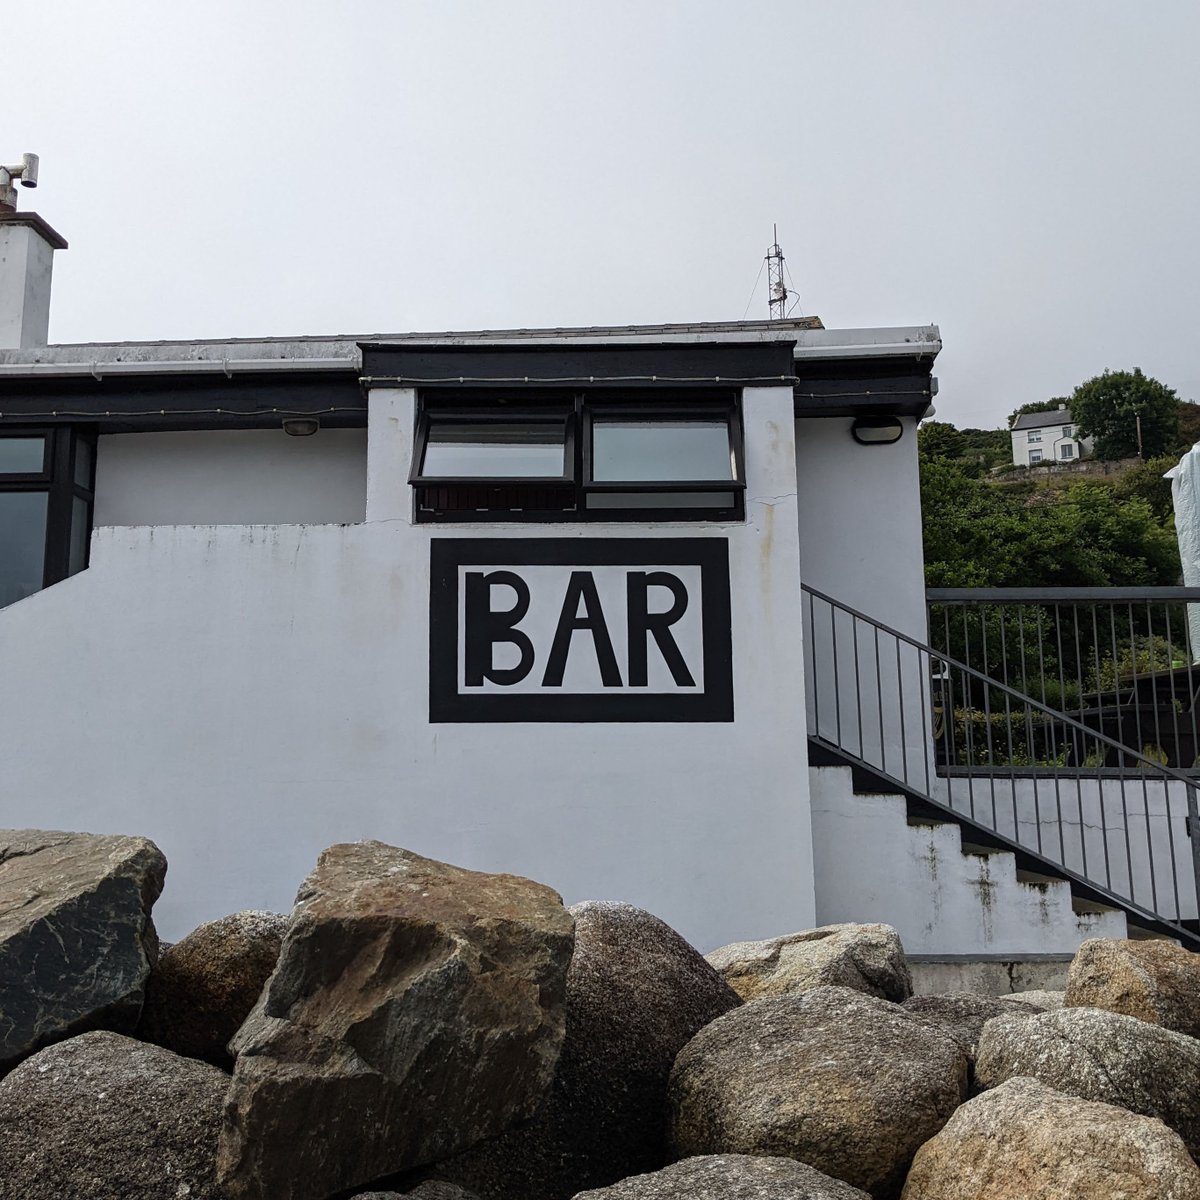 Phil Bans Pub, Arranmore, Co. Donegal.